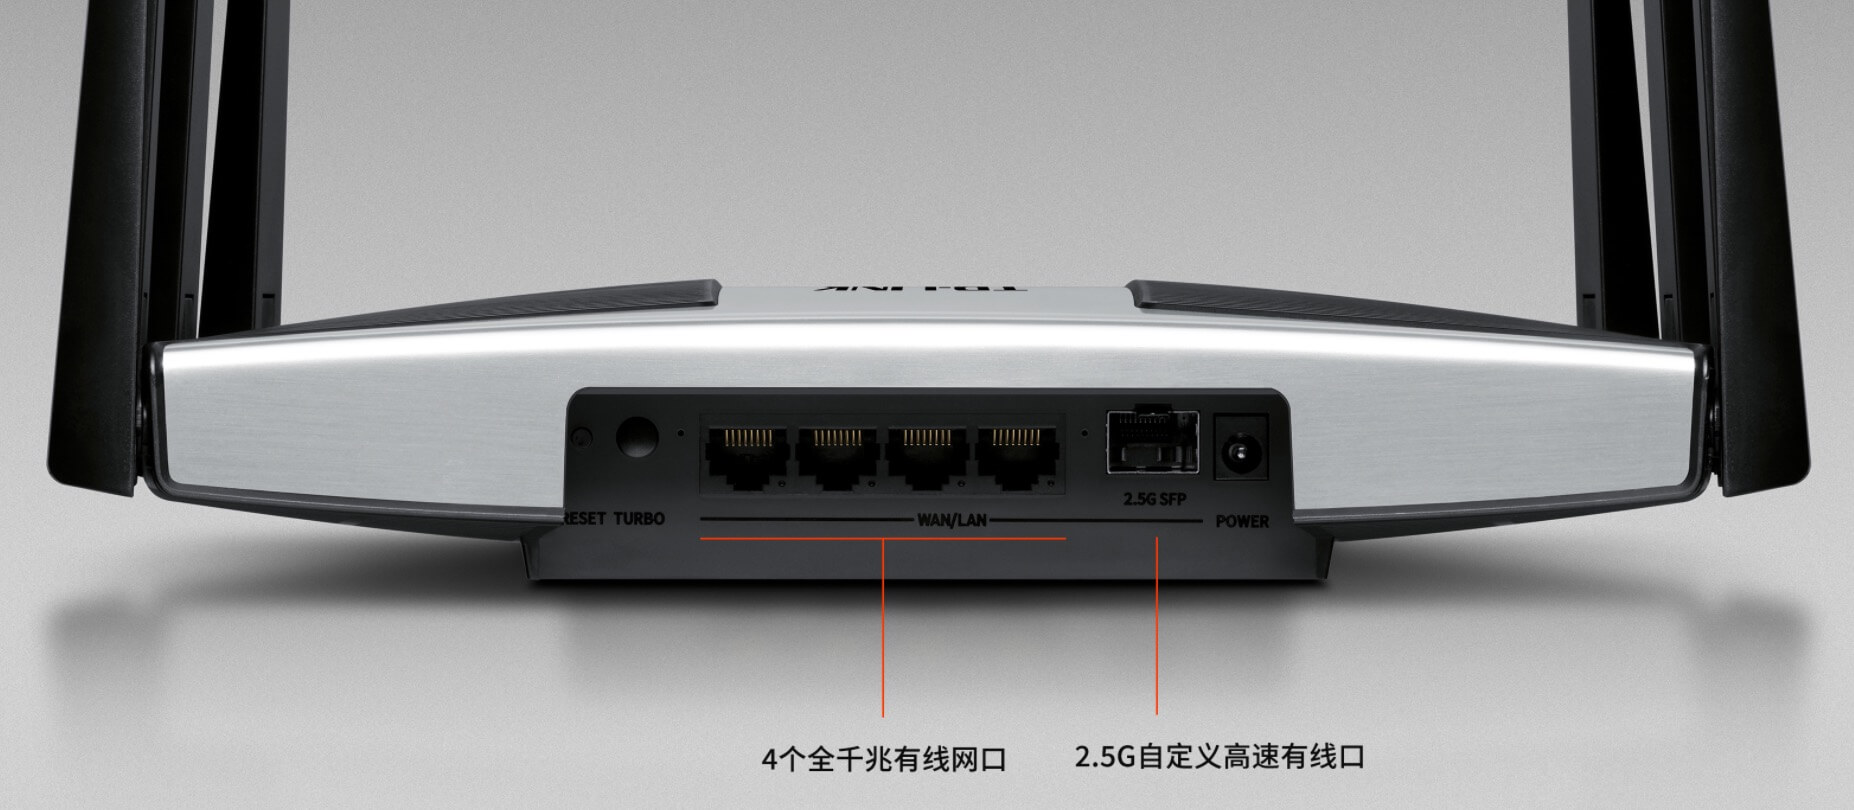 TP-LINK新款飞流路由器发布 三频10流 2.5G端口